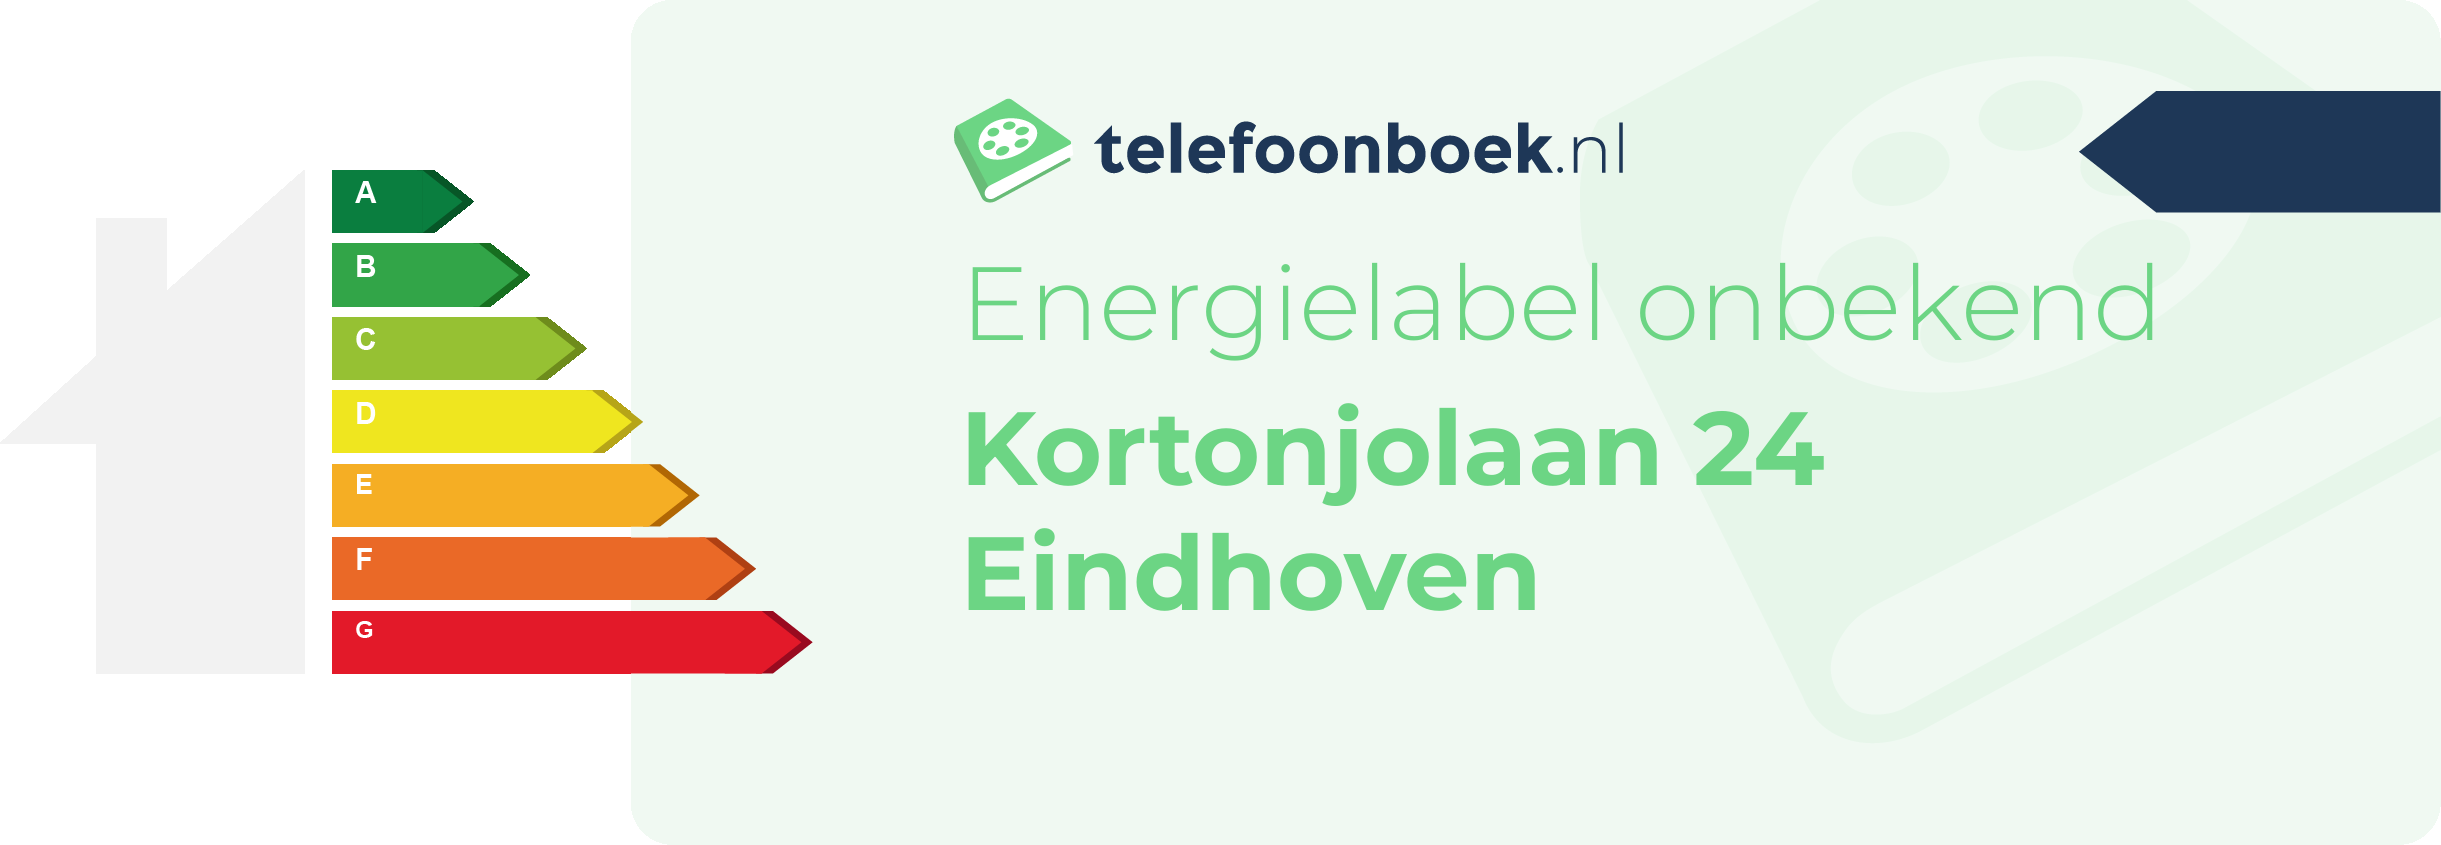 Energielabel Kortonjolaan 24 Eindhoven